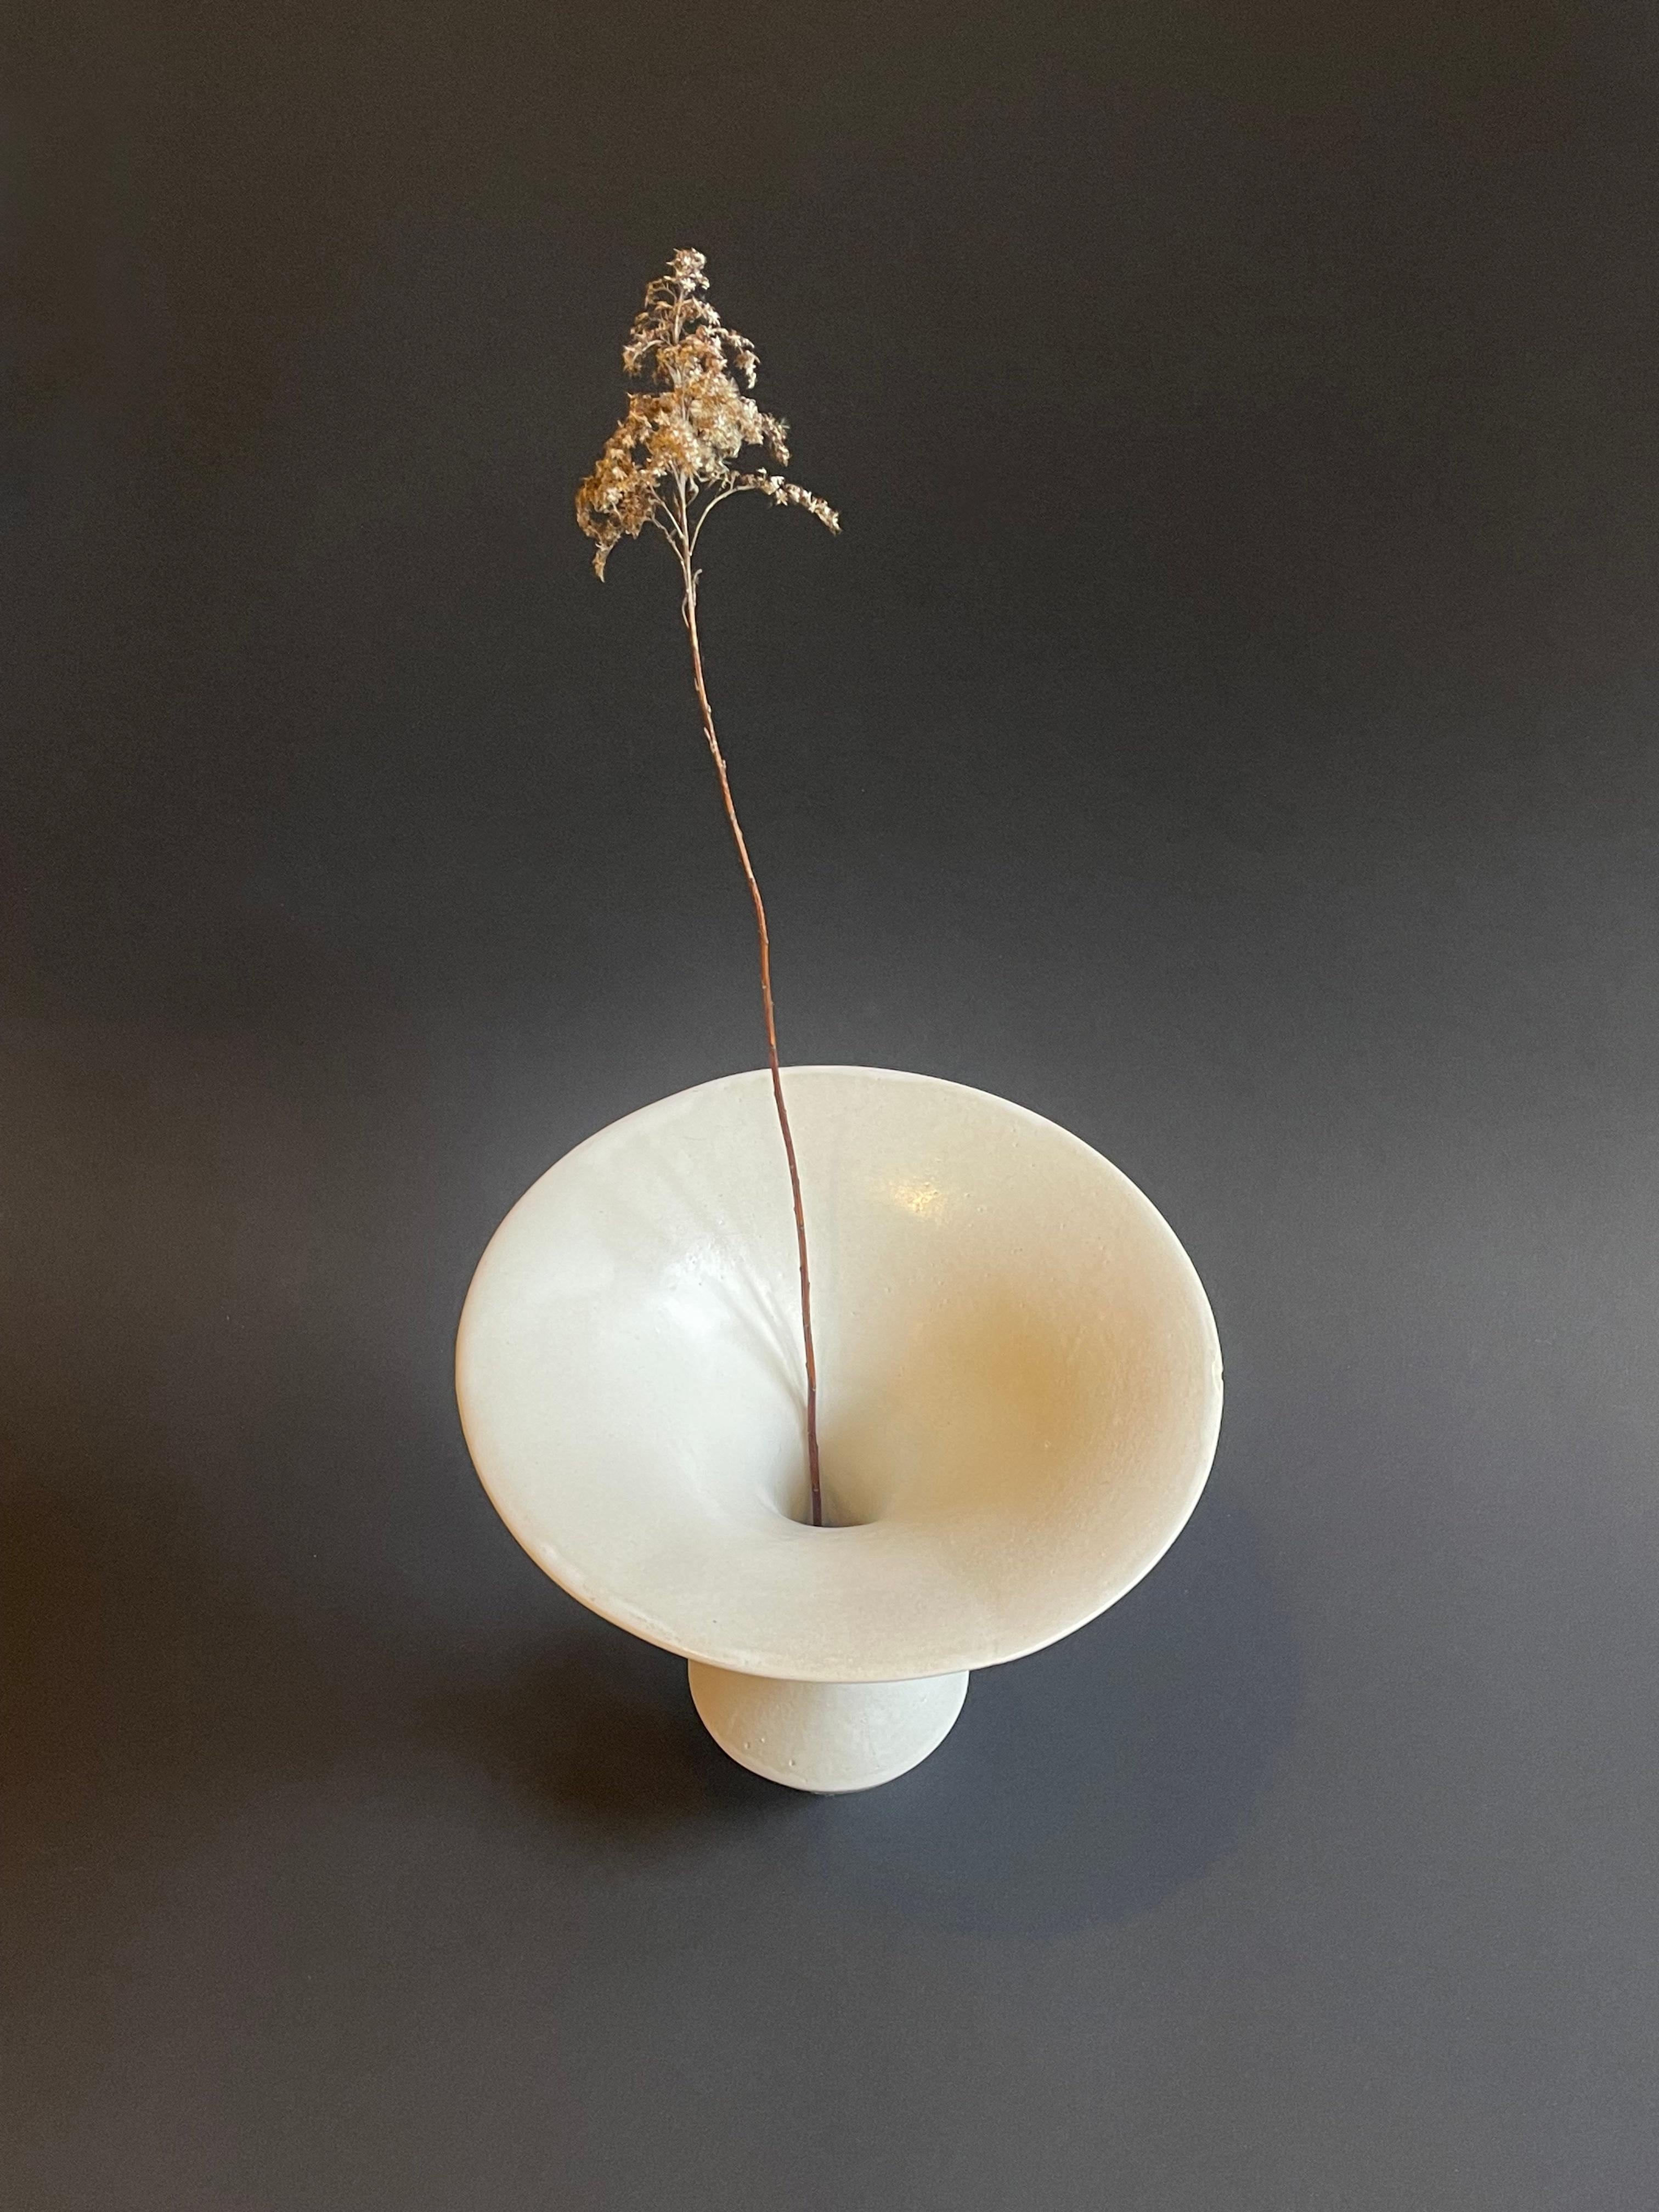 Mid-Century Modern Studio Ceramic White Funnel Ikebana Vase, 1970s - 1980s, Japanese Vibe, Germany  For Sale